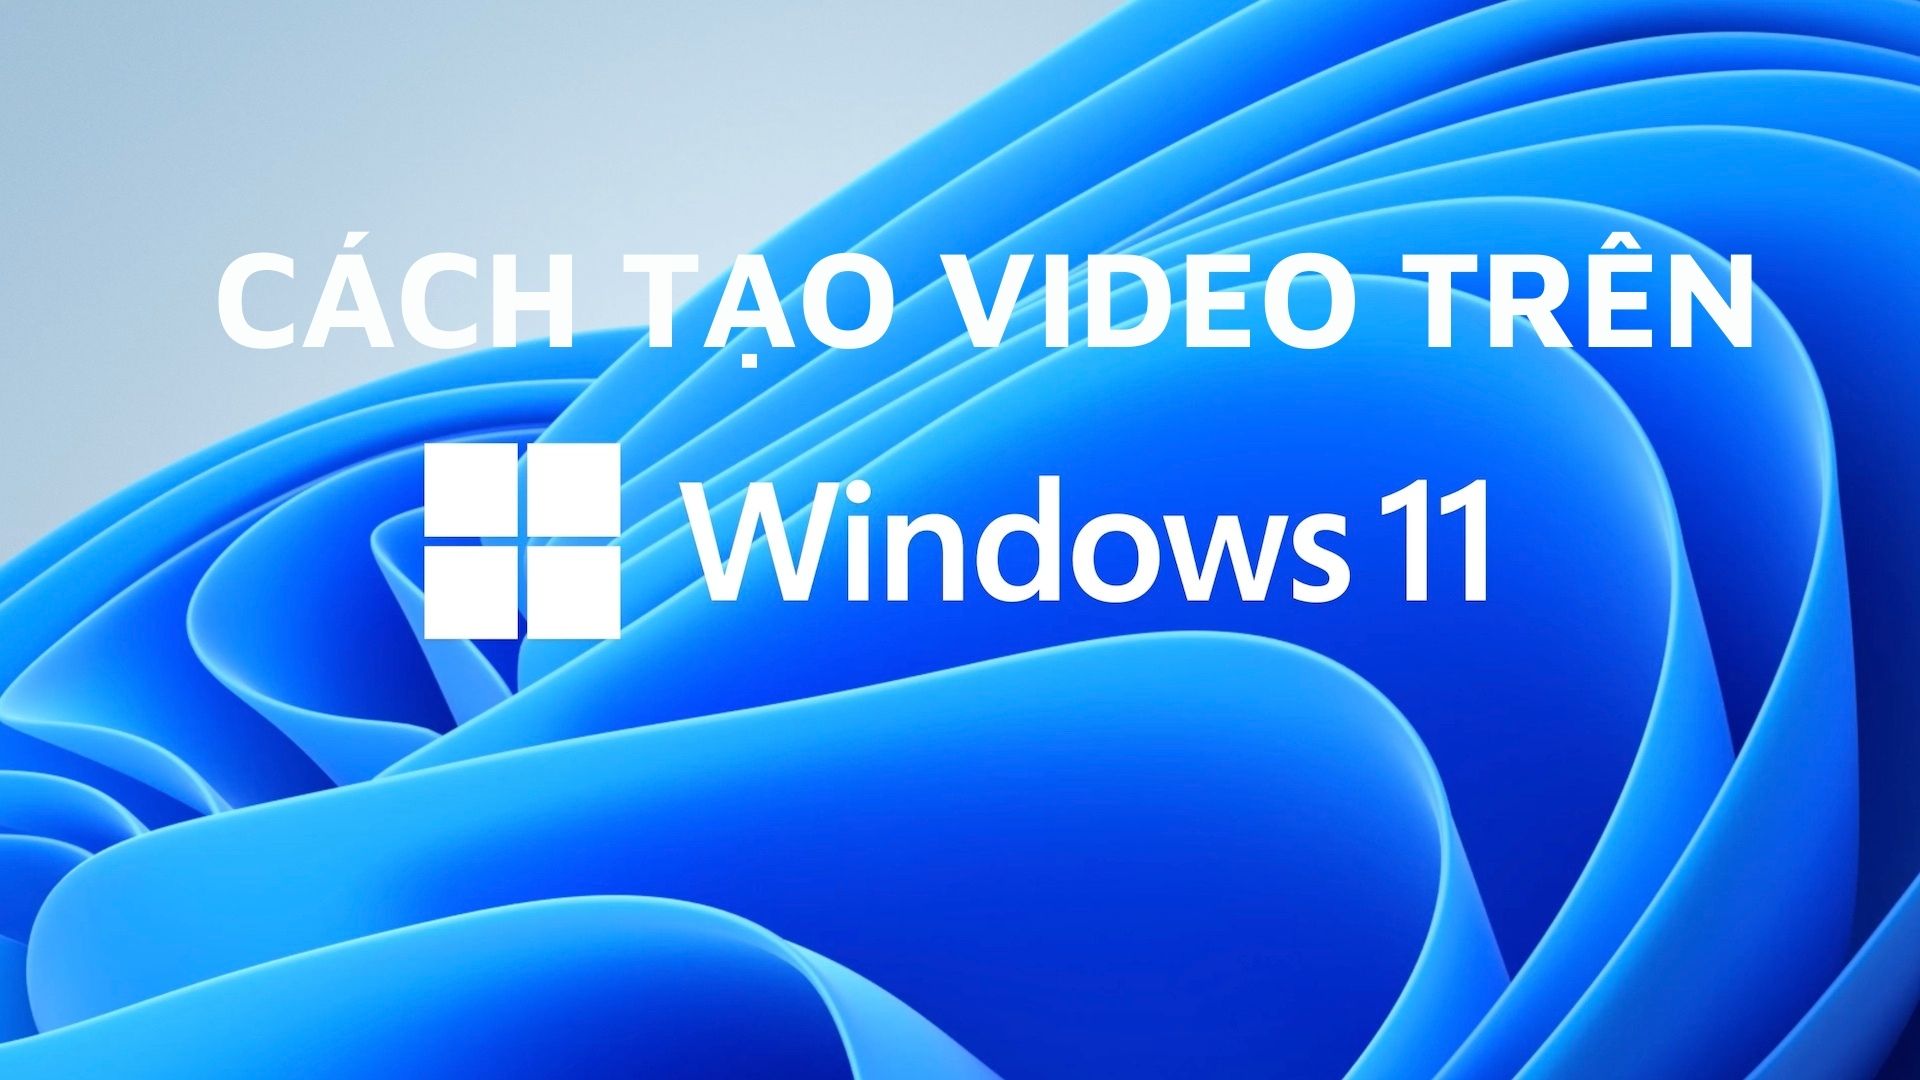 Hướng dẫn Windows 11 Video sẽ giúp bạn hiểu rõ hơn về các tính năng mới trên hệ điều hành Window